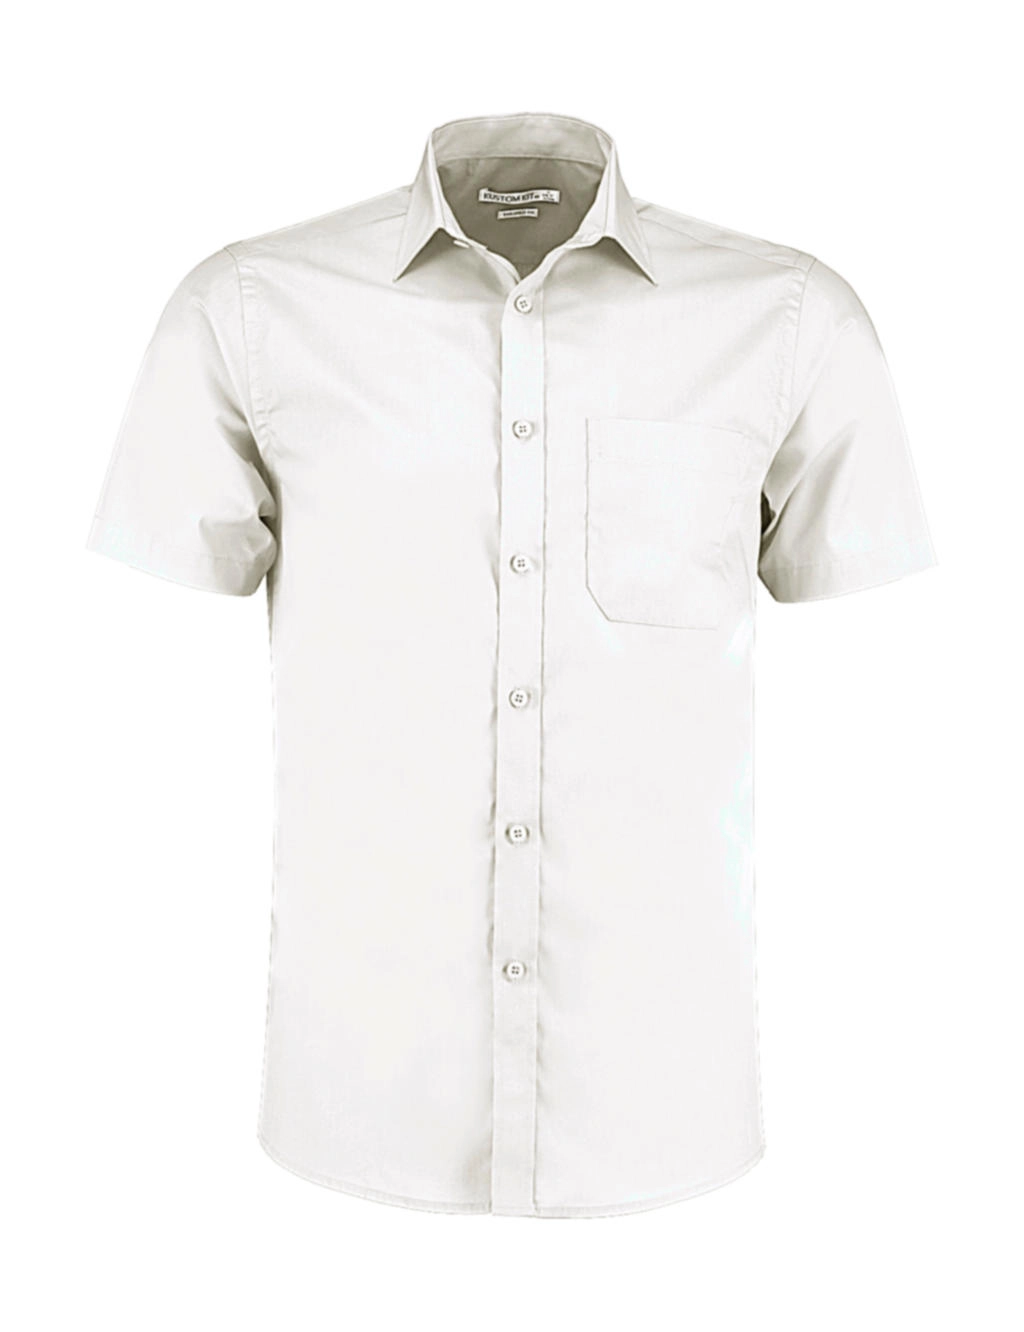 Tailored Fit Poplin Shirt SSL zum Besticken und Bedrucken in der Farbe White mit Ihren Logo, Schriftzug oder Motiv.